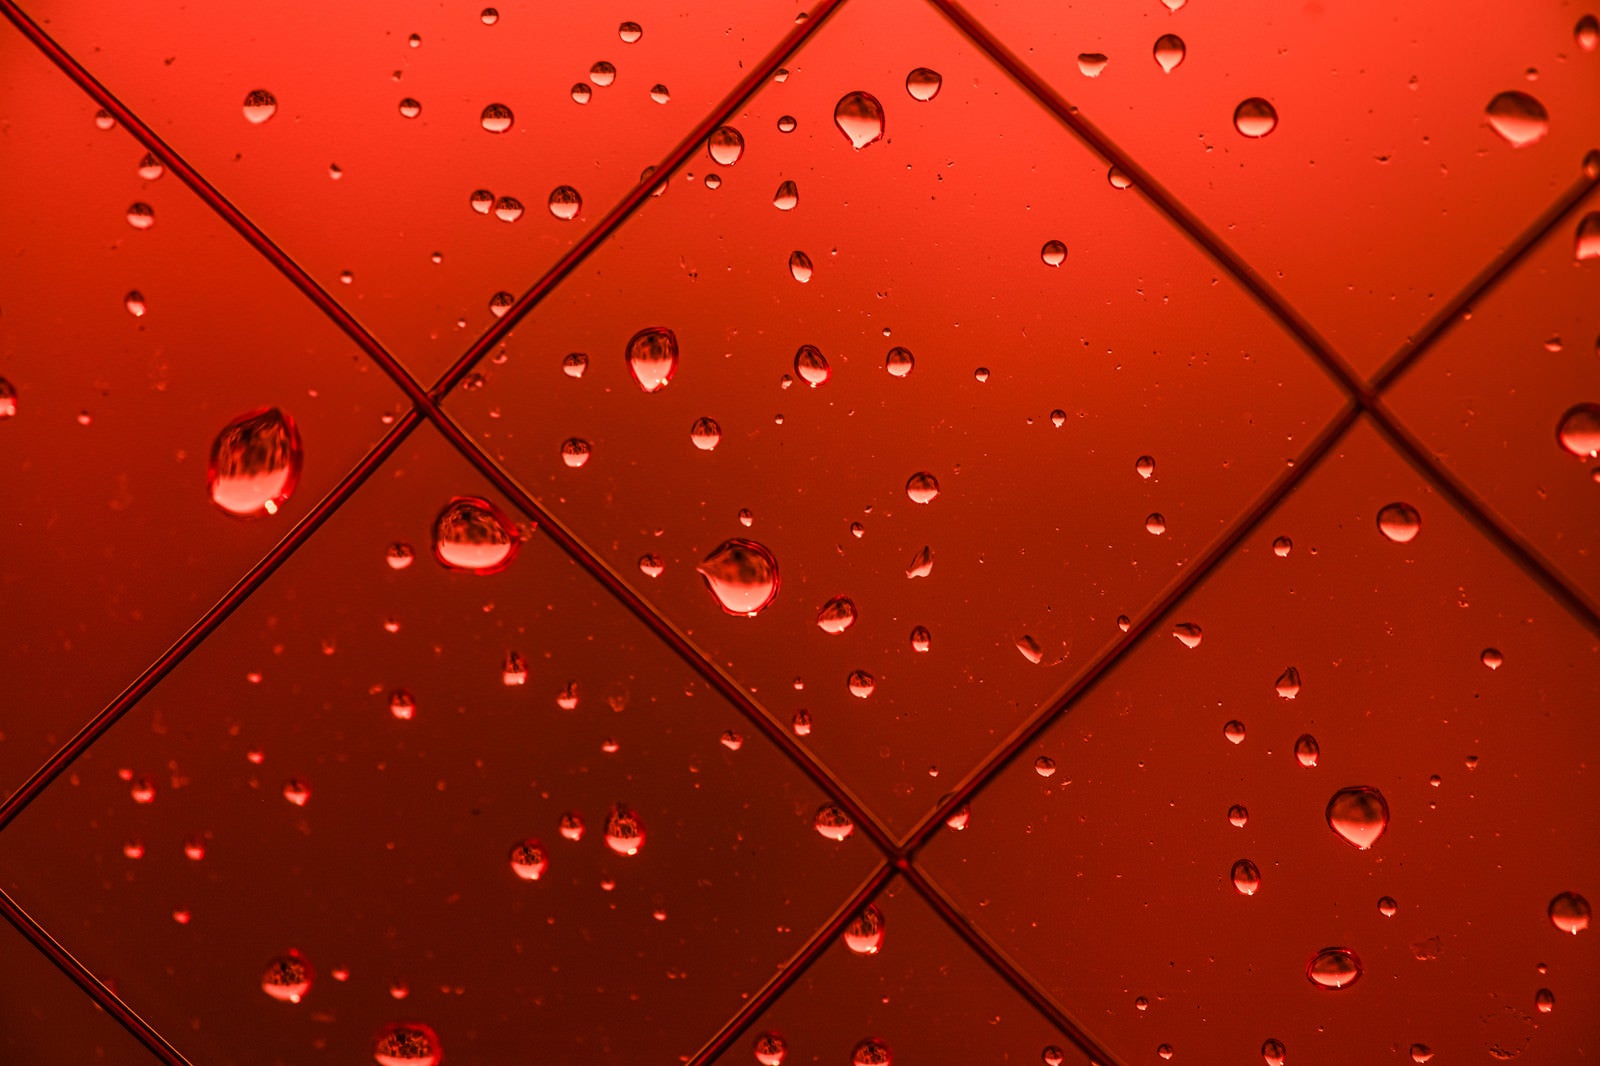 「赤い窓と水滴」の写真